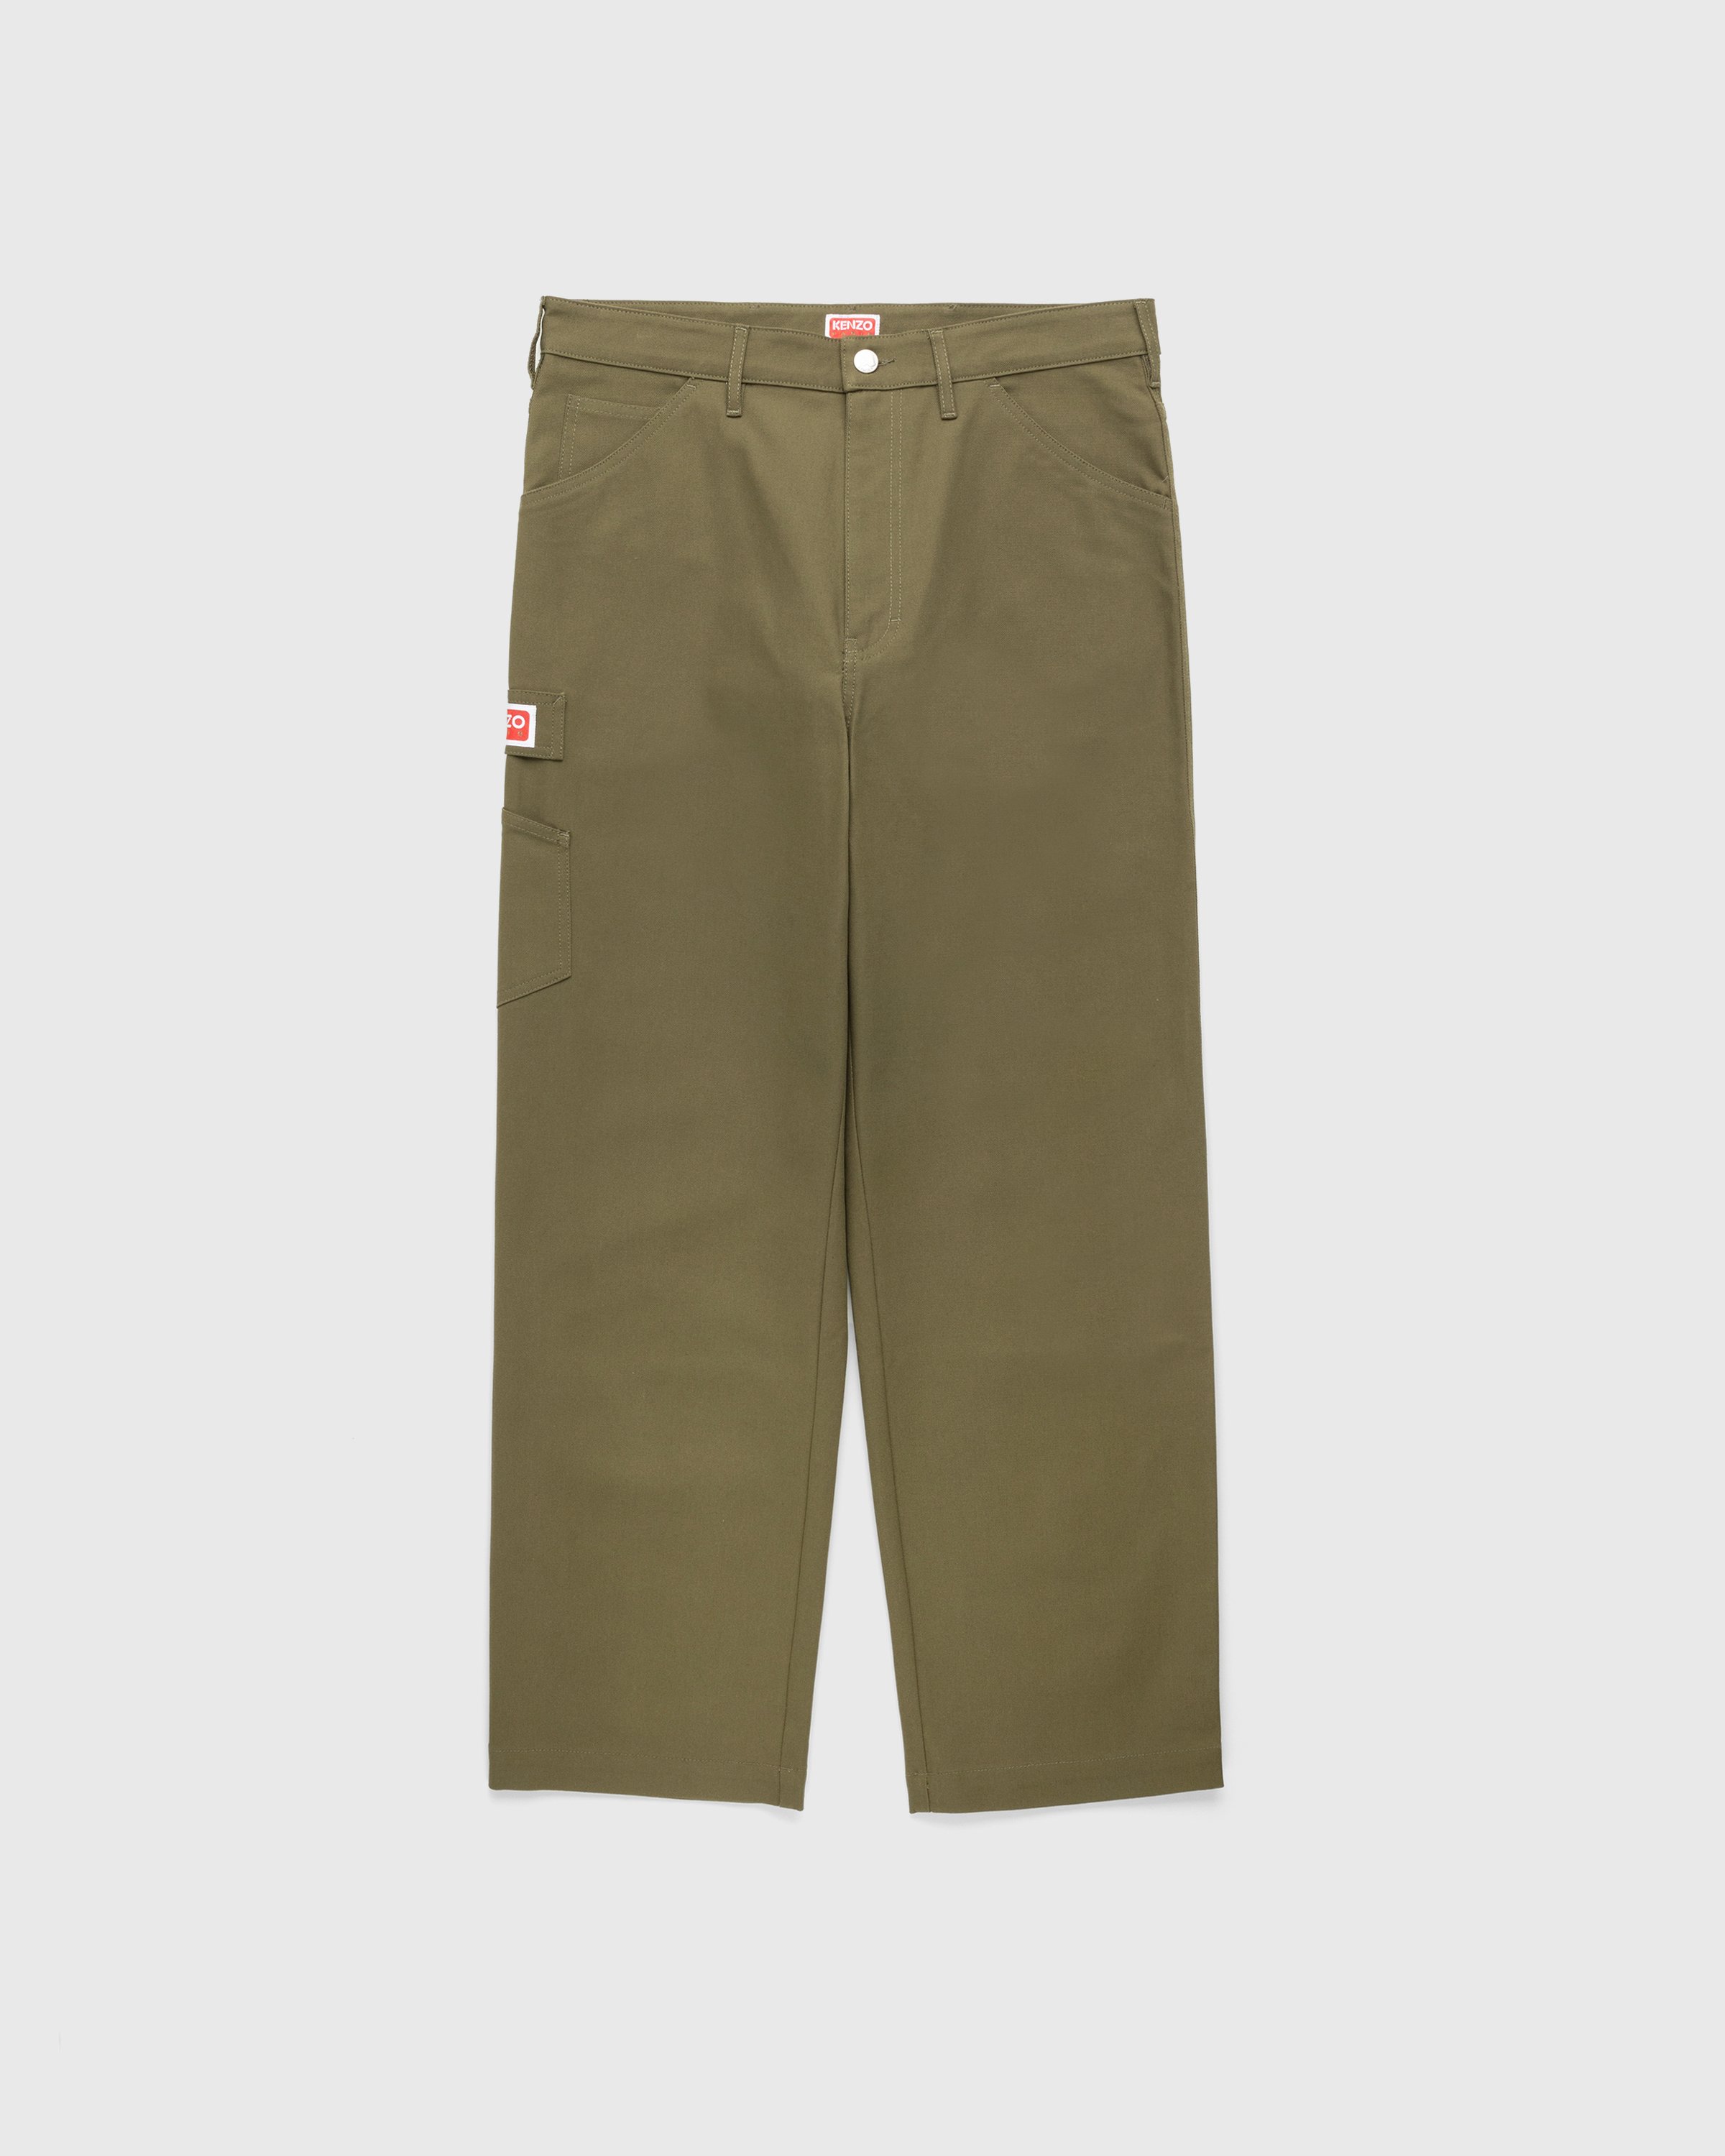 Kenzo - Carpenter Pants Dark Khaki - Clothing - Green - Image 1